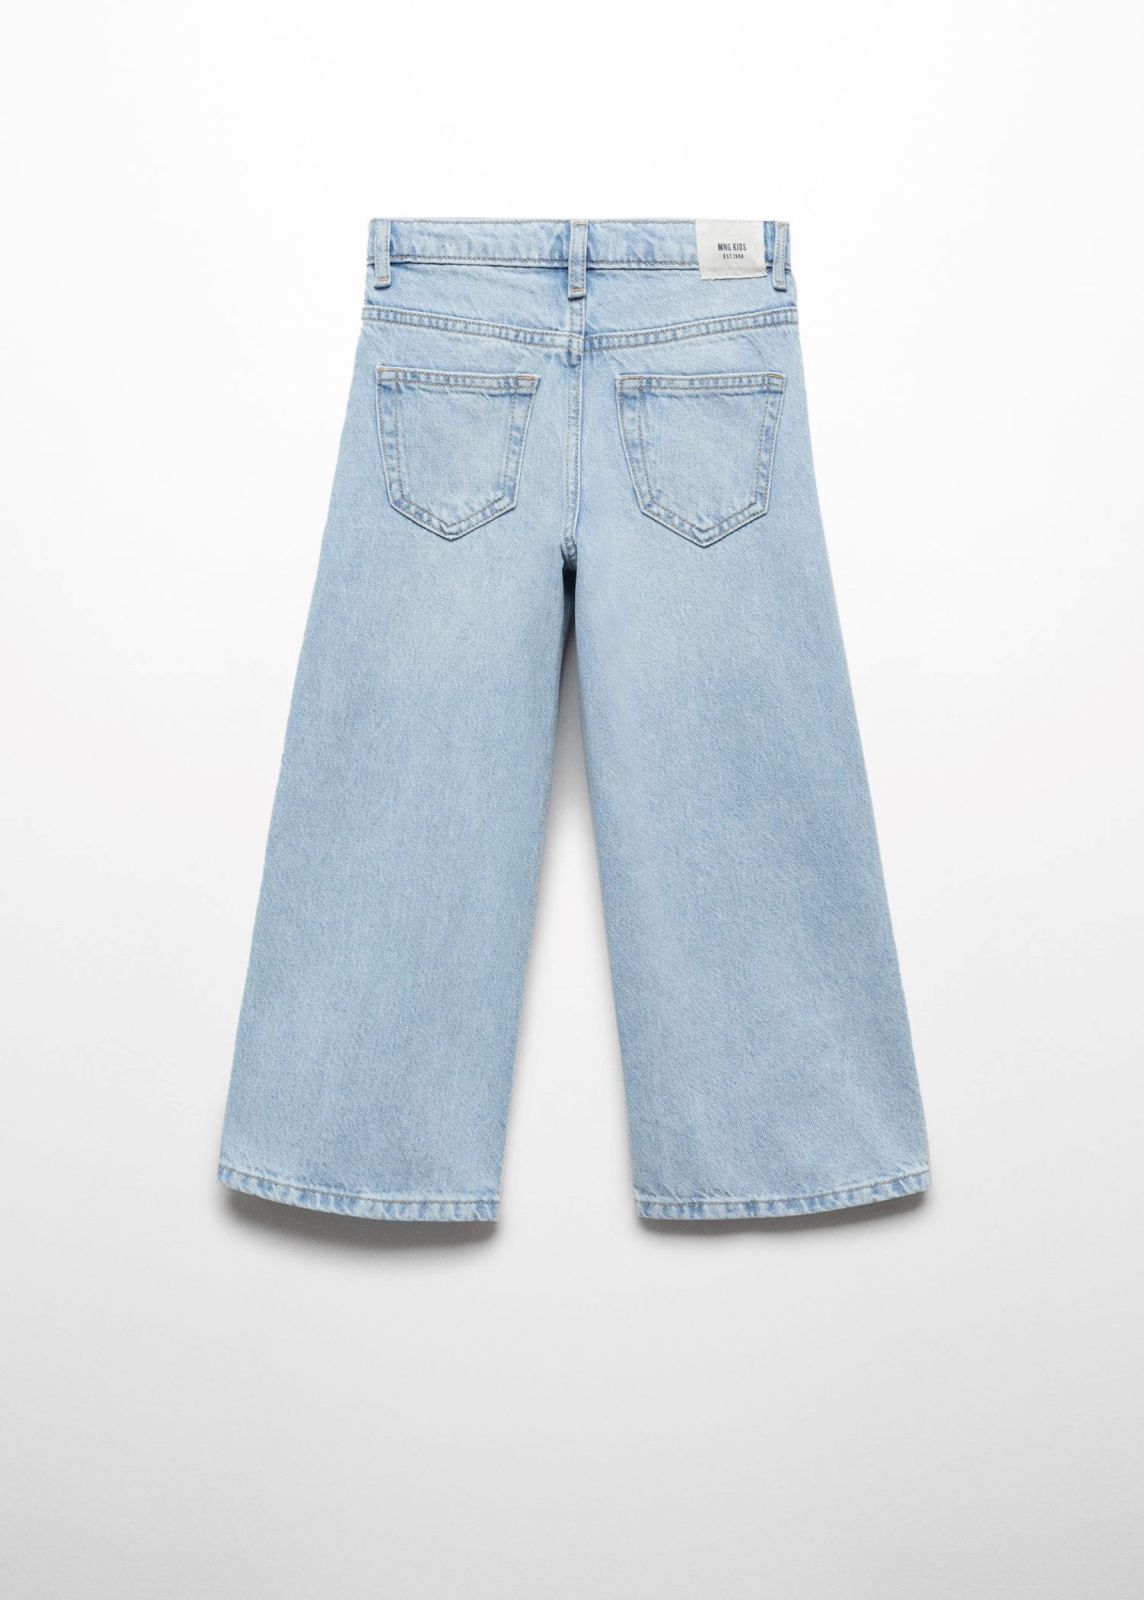  ג'ינס ארוך בגזרה מתרחבת / בנות של MANGO